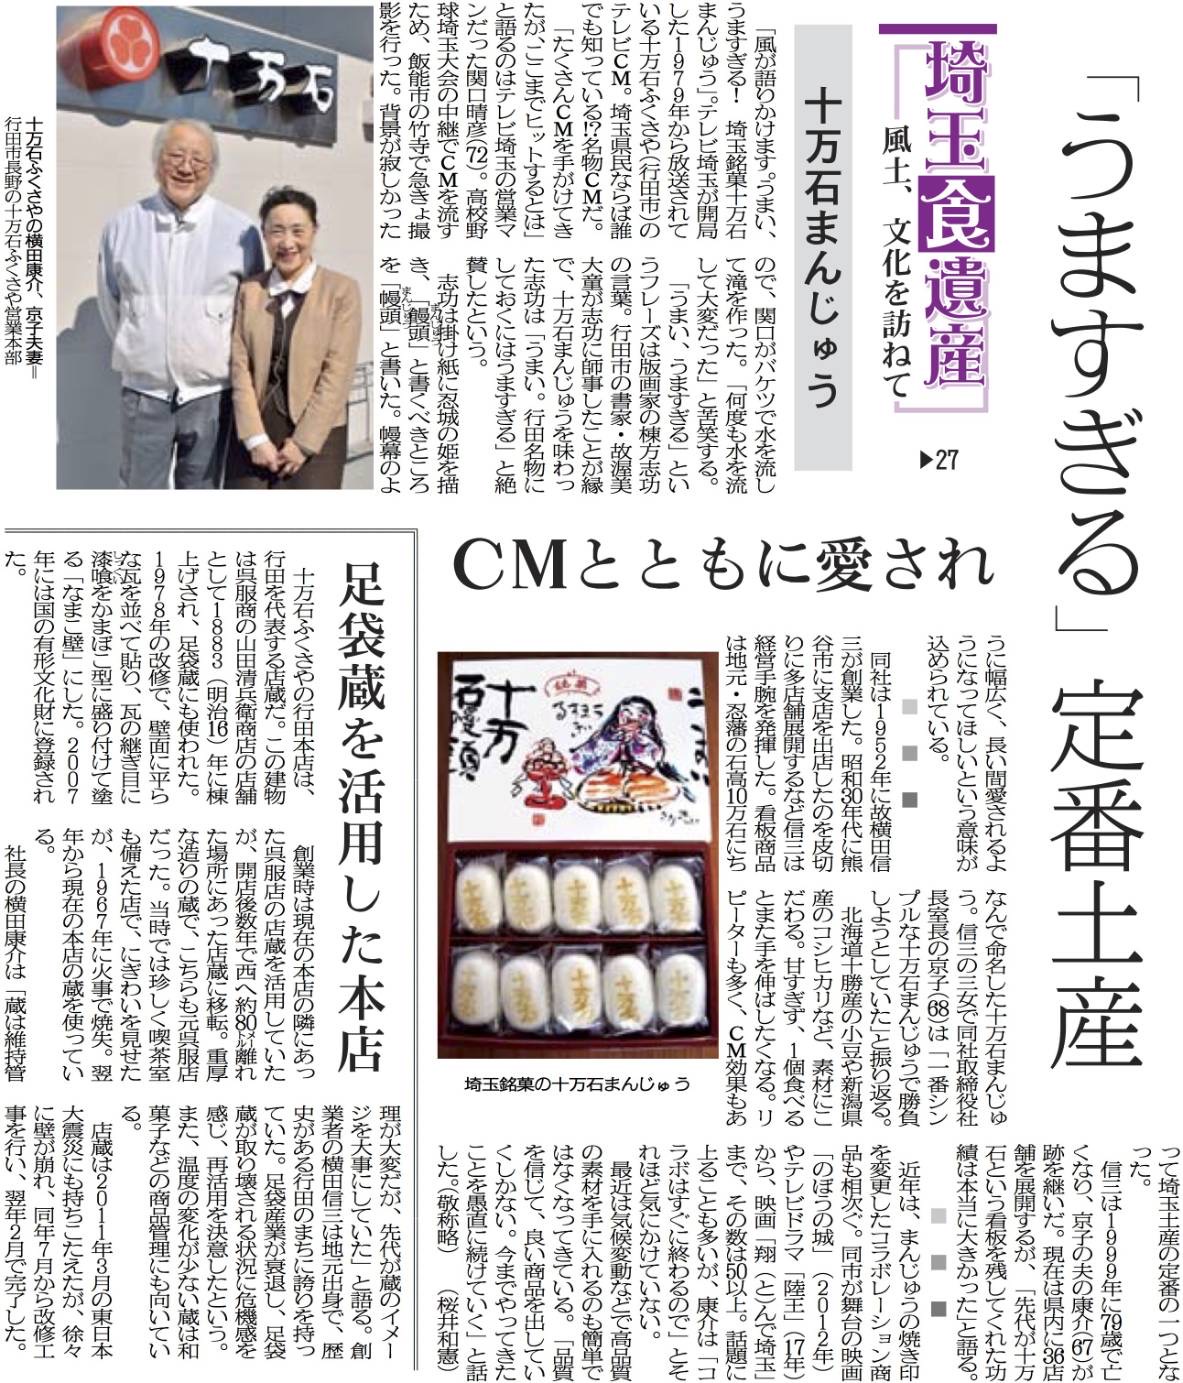 埼玉新聞２０２４年３月１７日(日)の朝刊一面で十万石まんじゅうが紹介されました。 イメージ